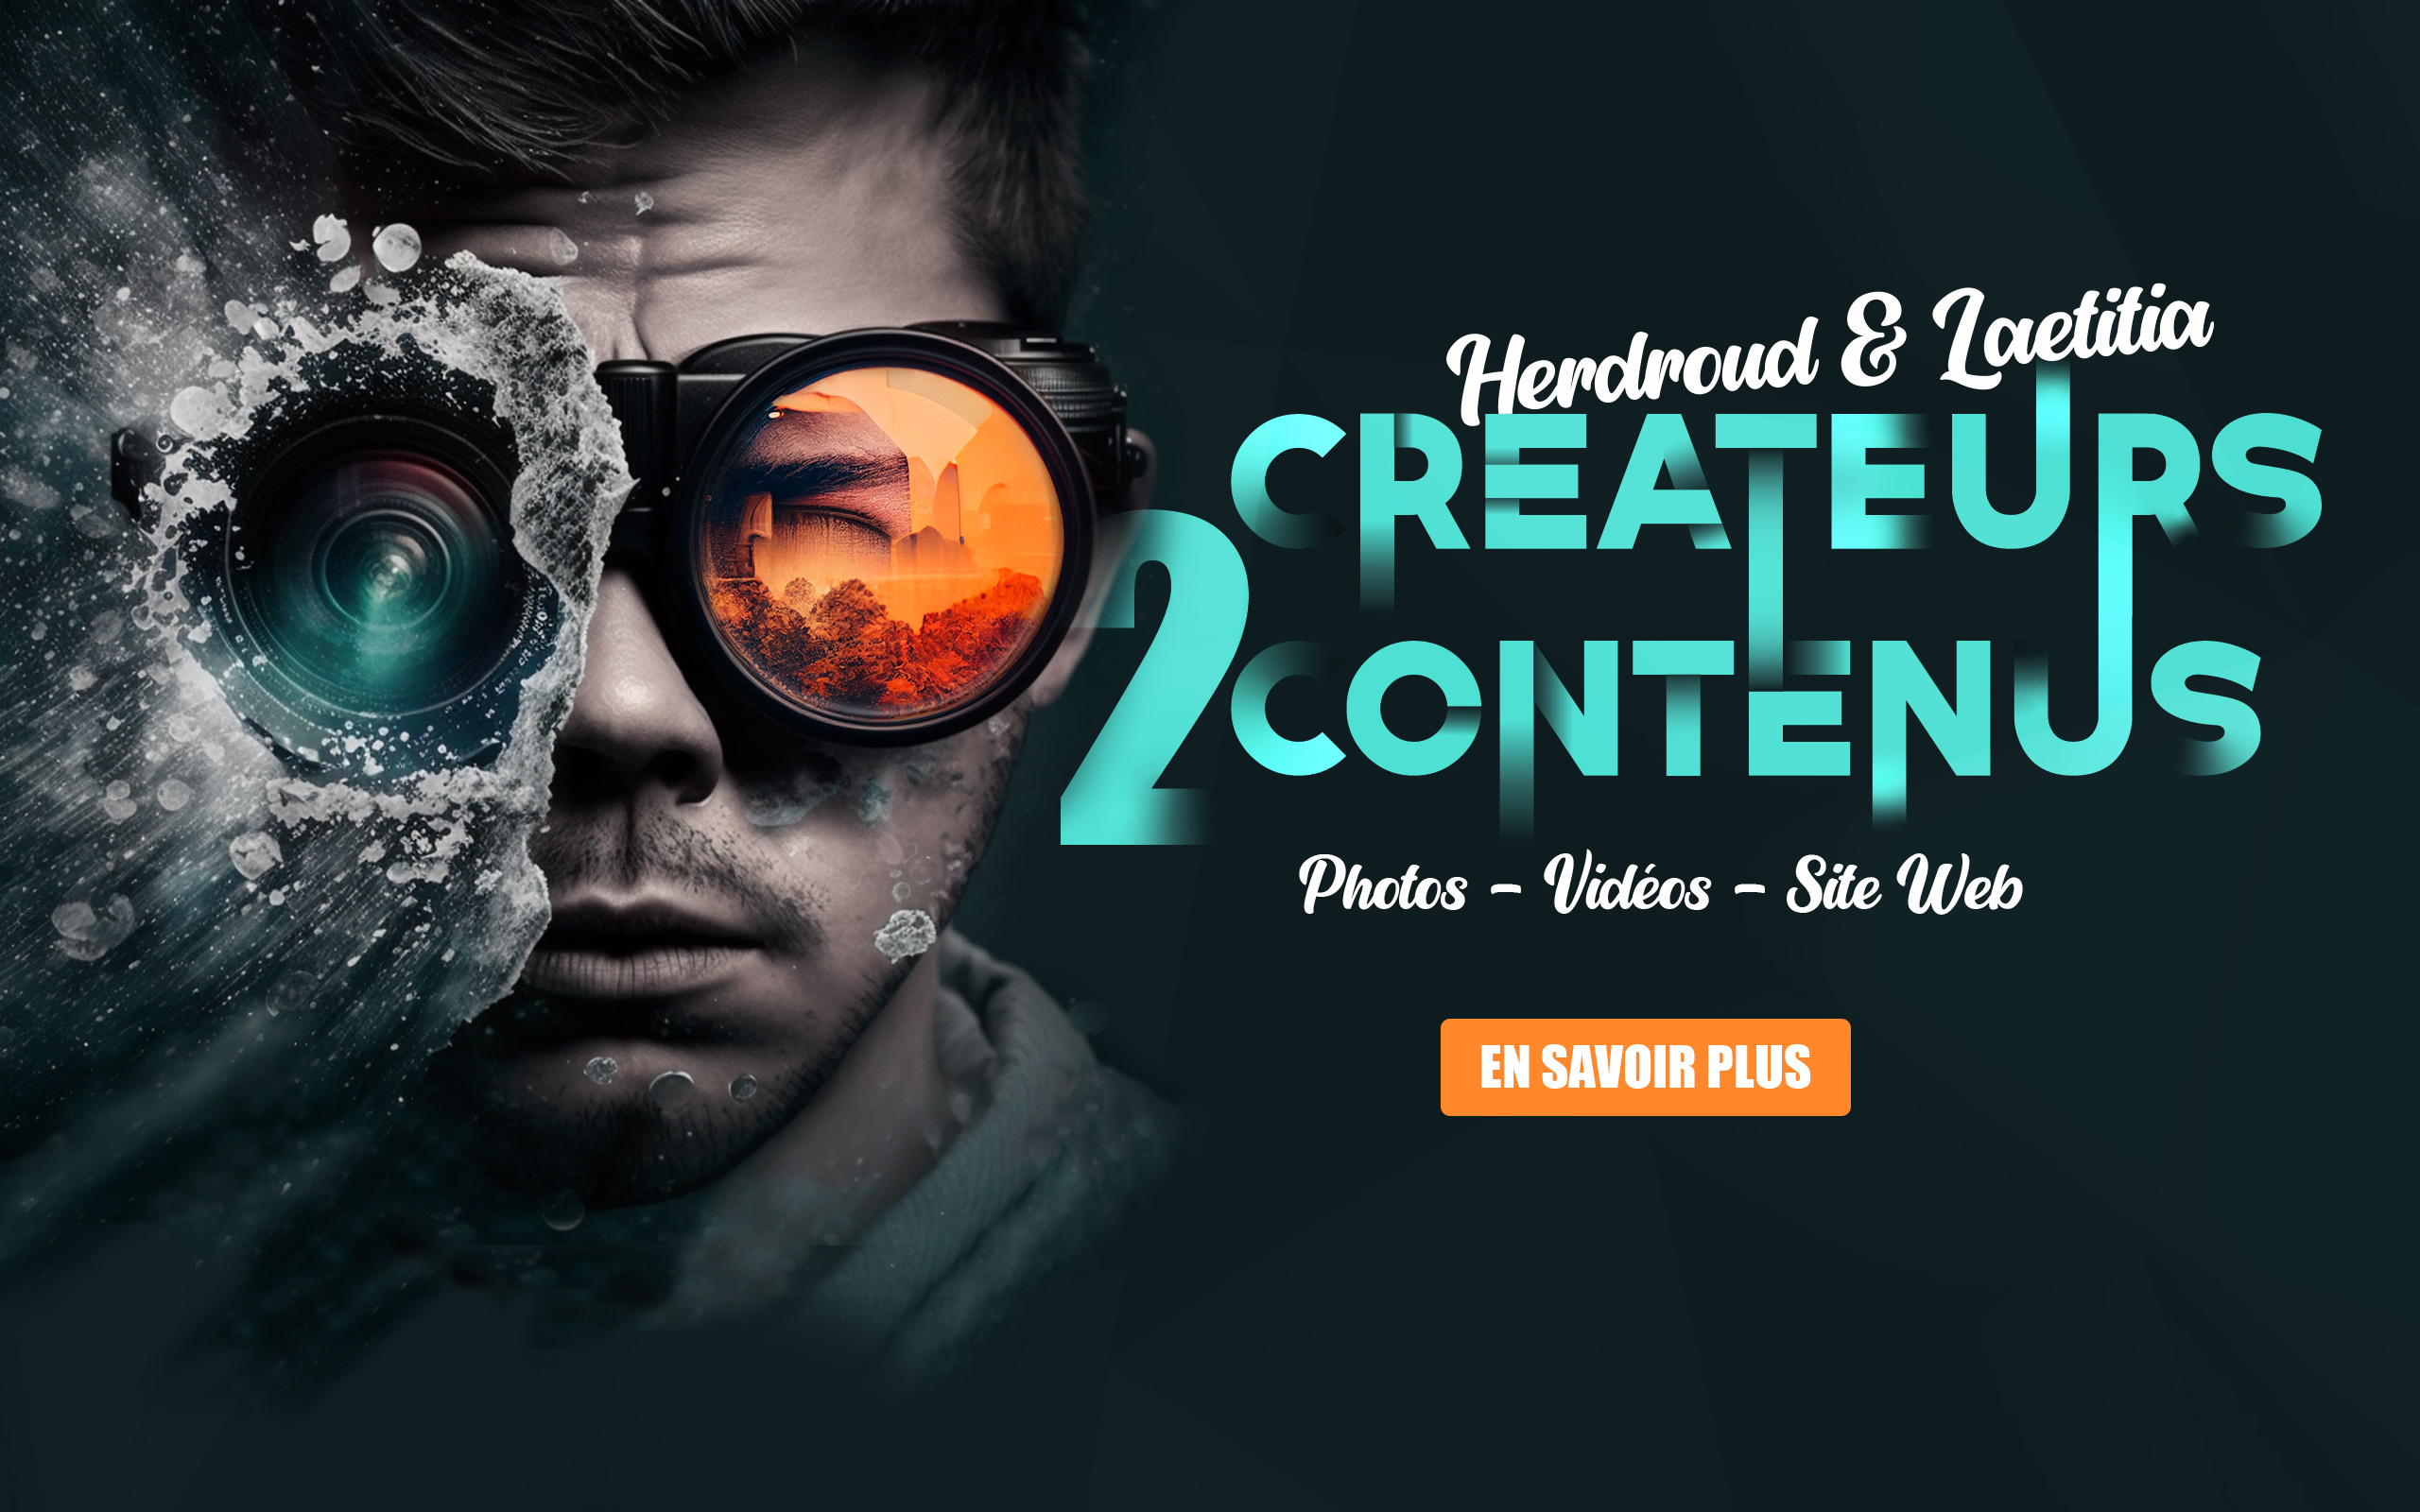 Herdroud et Laetitia créateurs de contenus photos vidéos et web